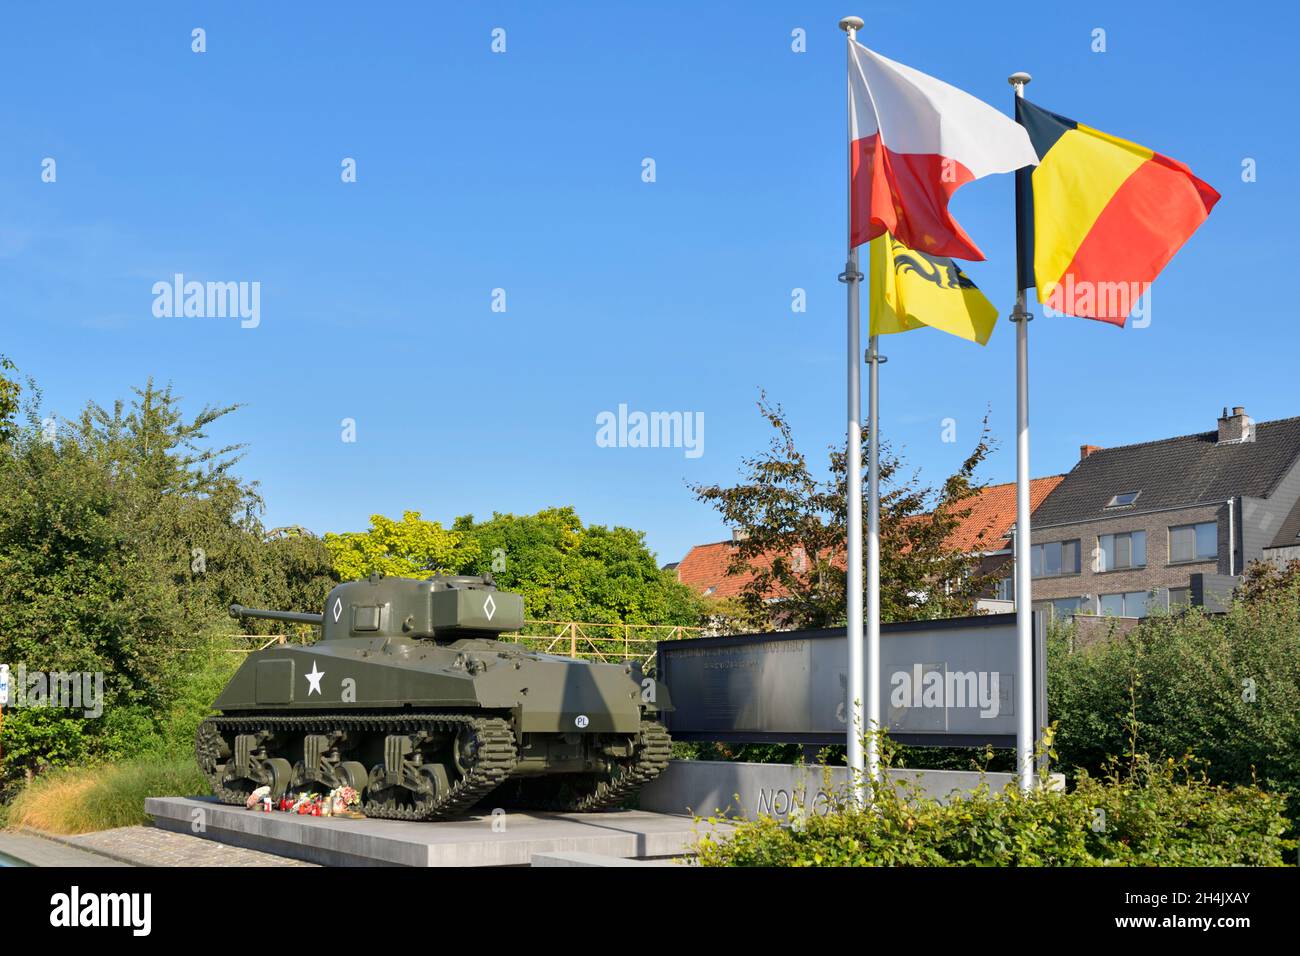 Bélgica, Flandes Occidental, Thielt o Tielt, memorial de la liberación de la ciudad de Tielt por el general polaco Maczek y el ejército polaco en septiembre de 1944, tanque Sherman Firefly del ejército polaco Foto de stock